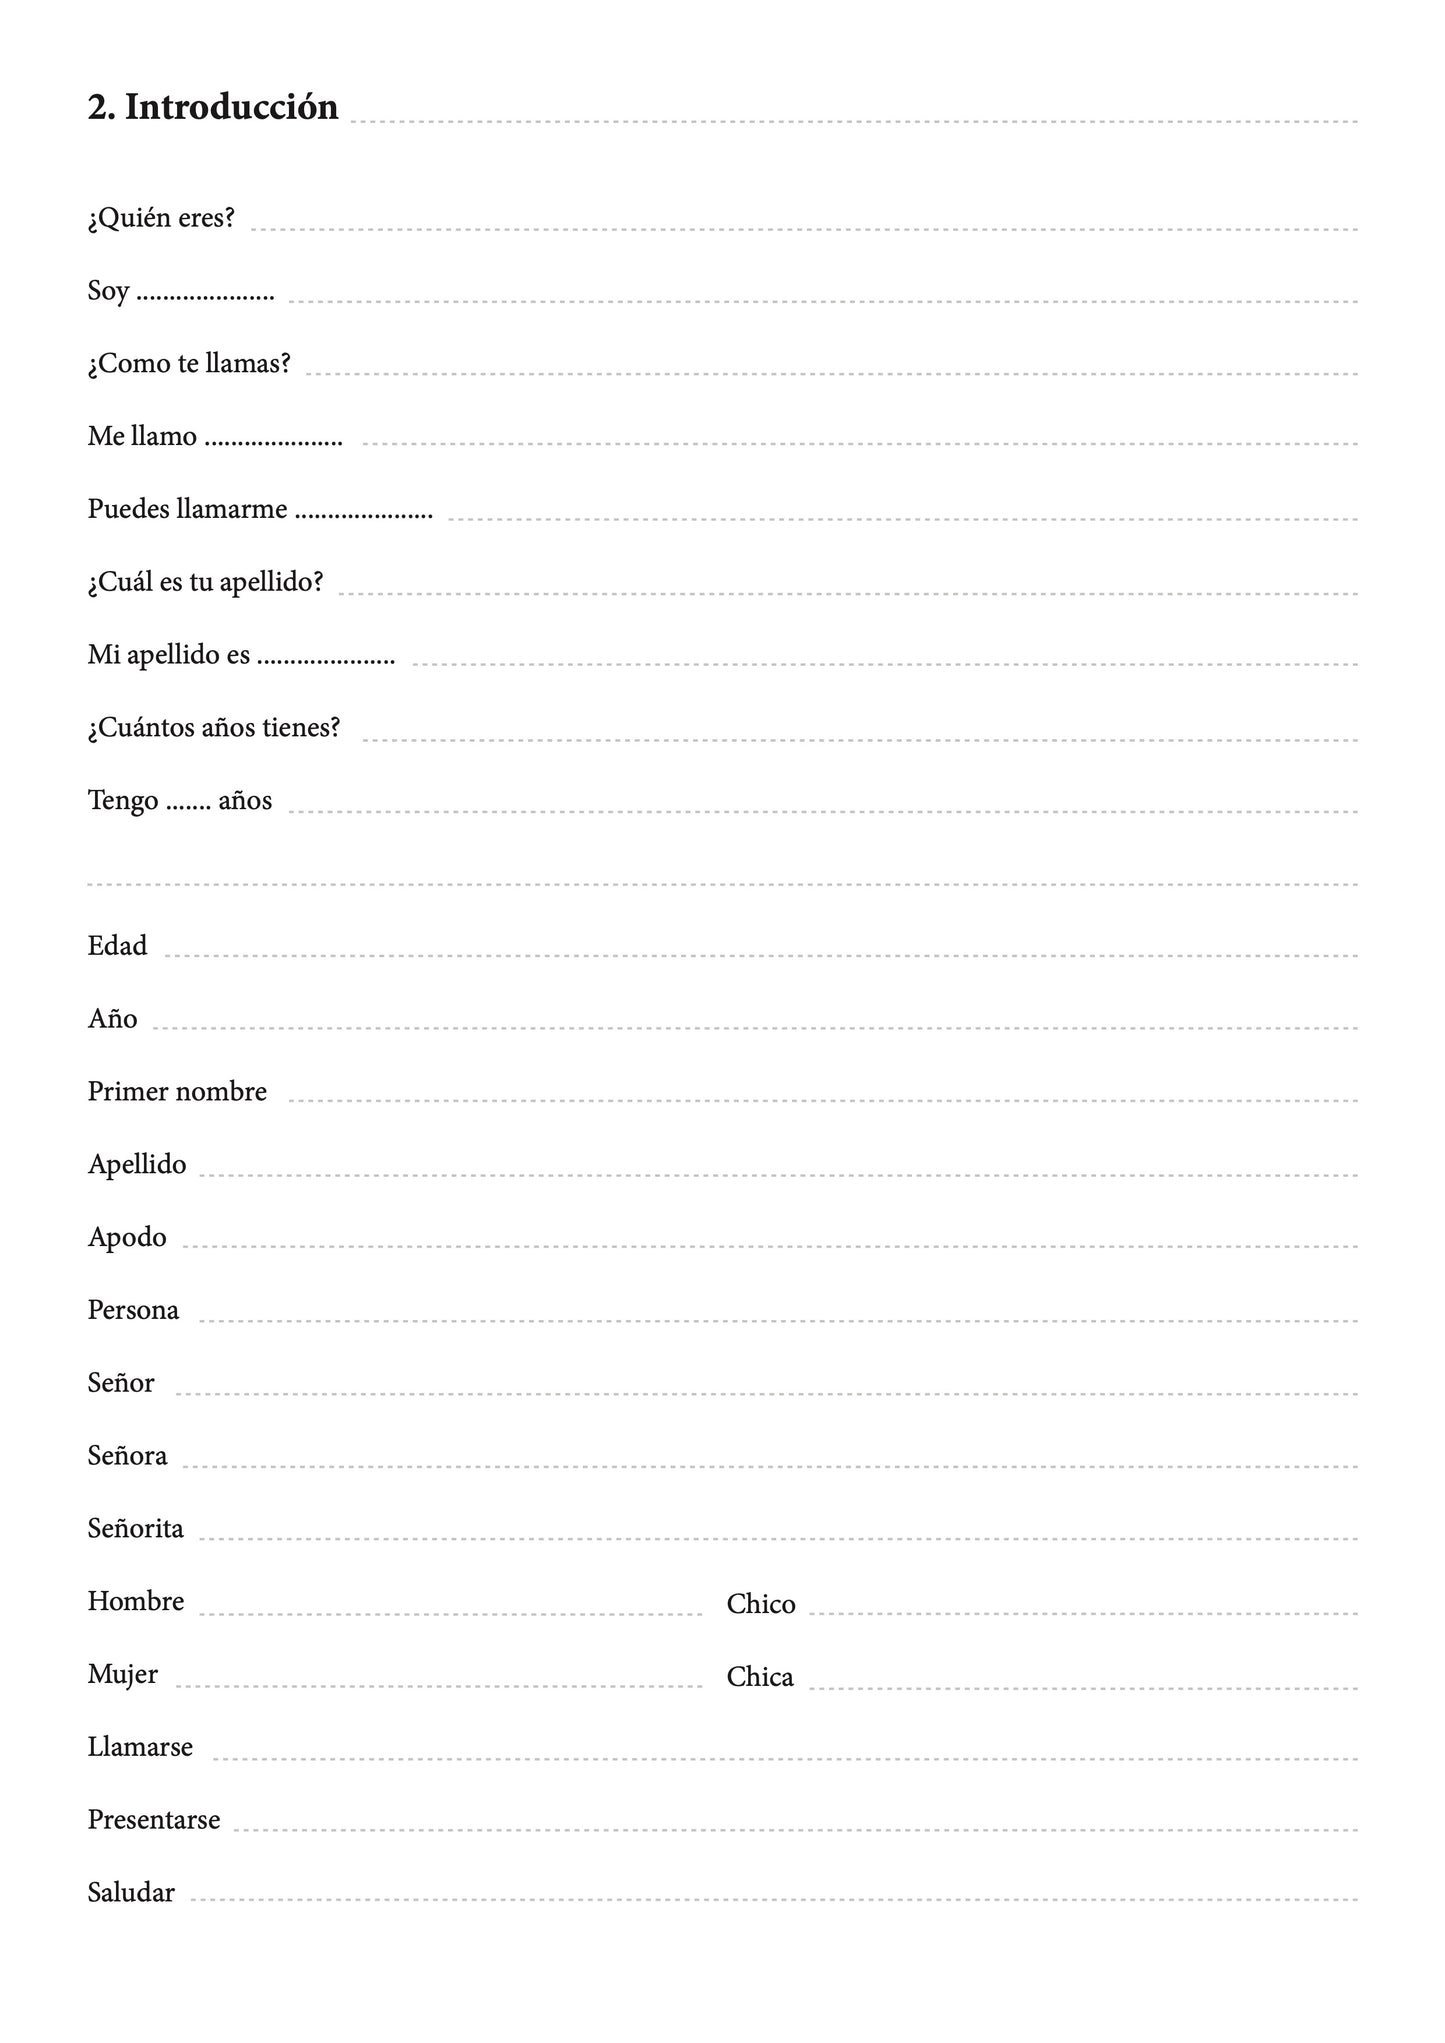 Español-finlandés cuaderno de vocabulario